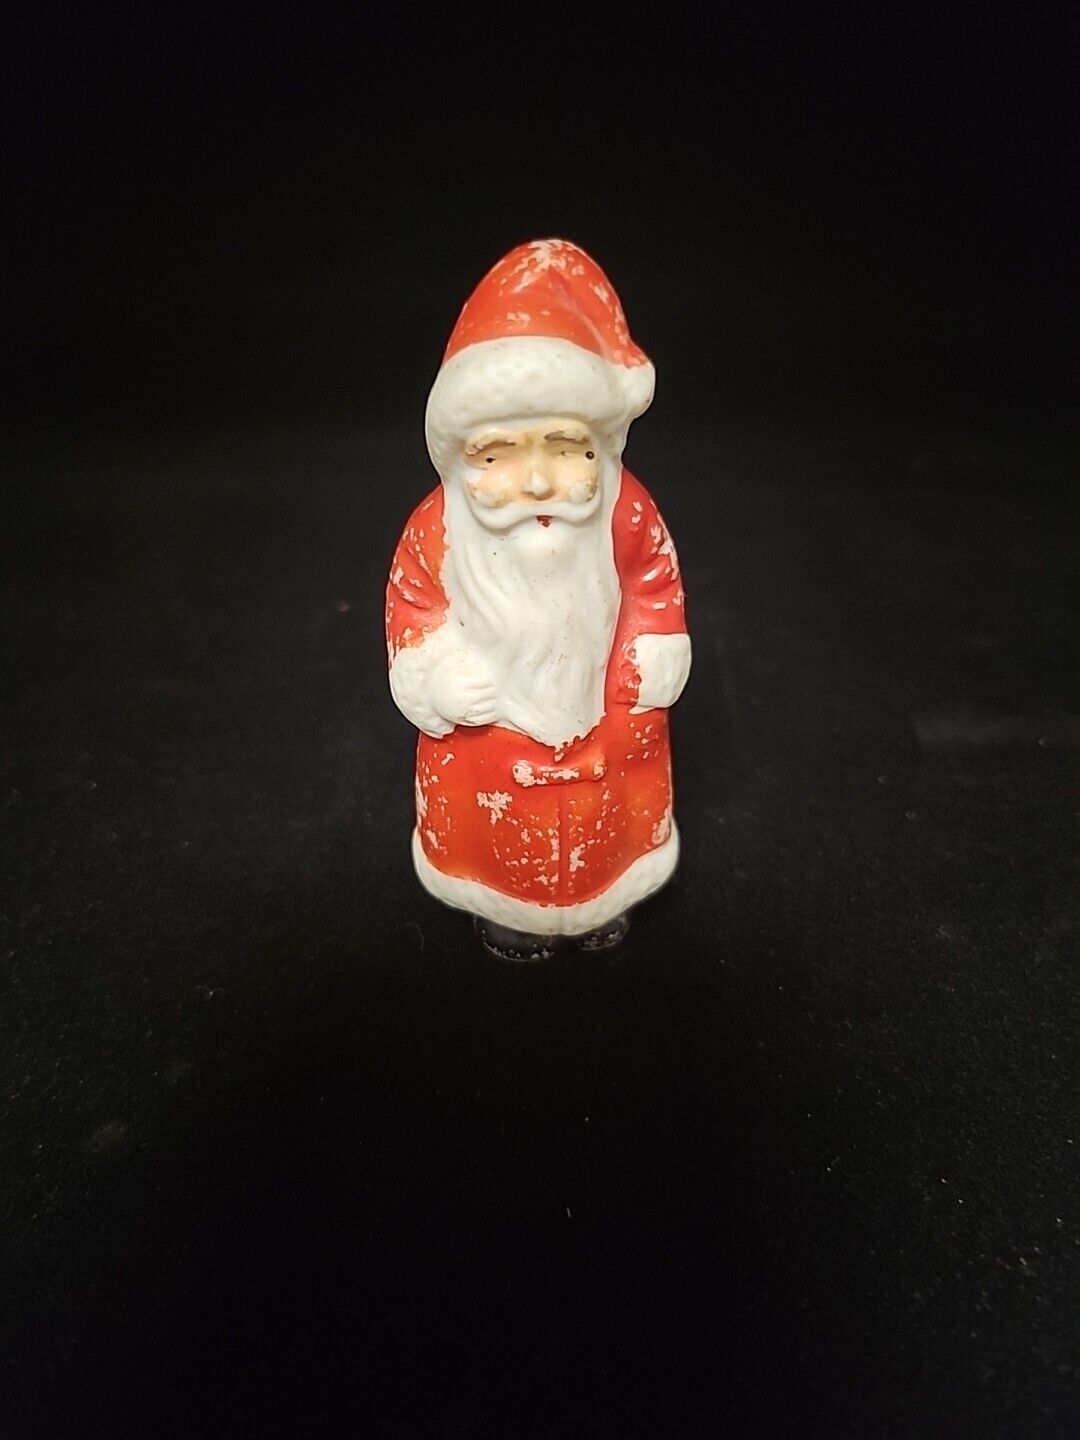 Miniature Santa Claus Figurine Porcelain Bisque 3” Japan Vintage 